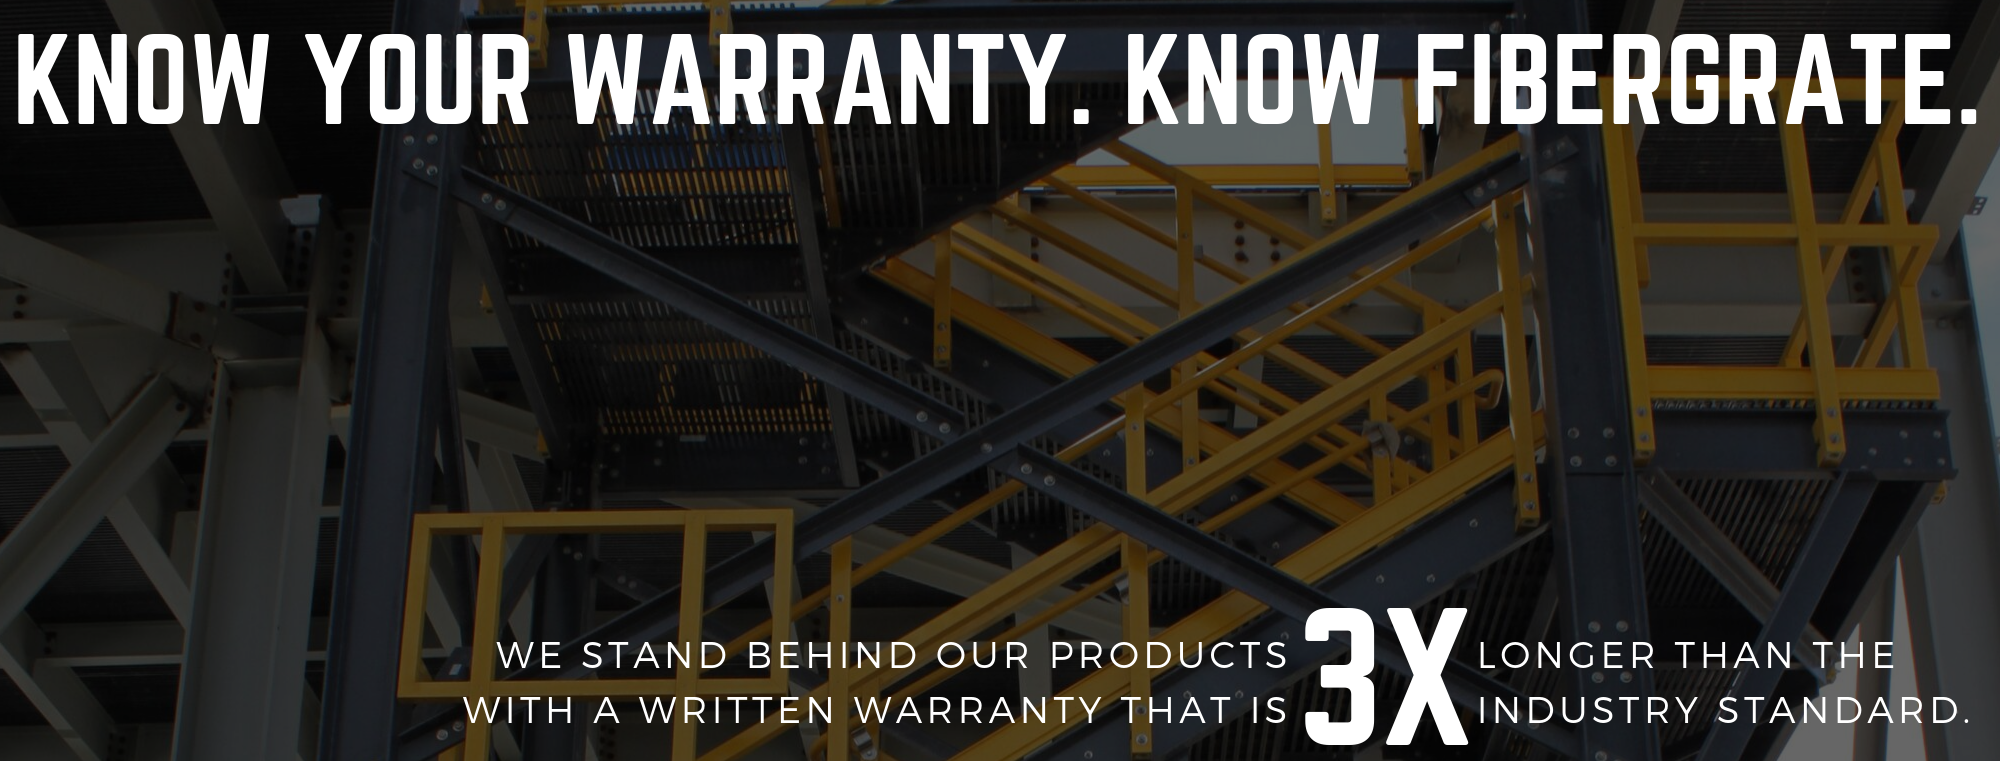 know your warranty. know fibergrate.